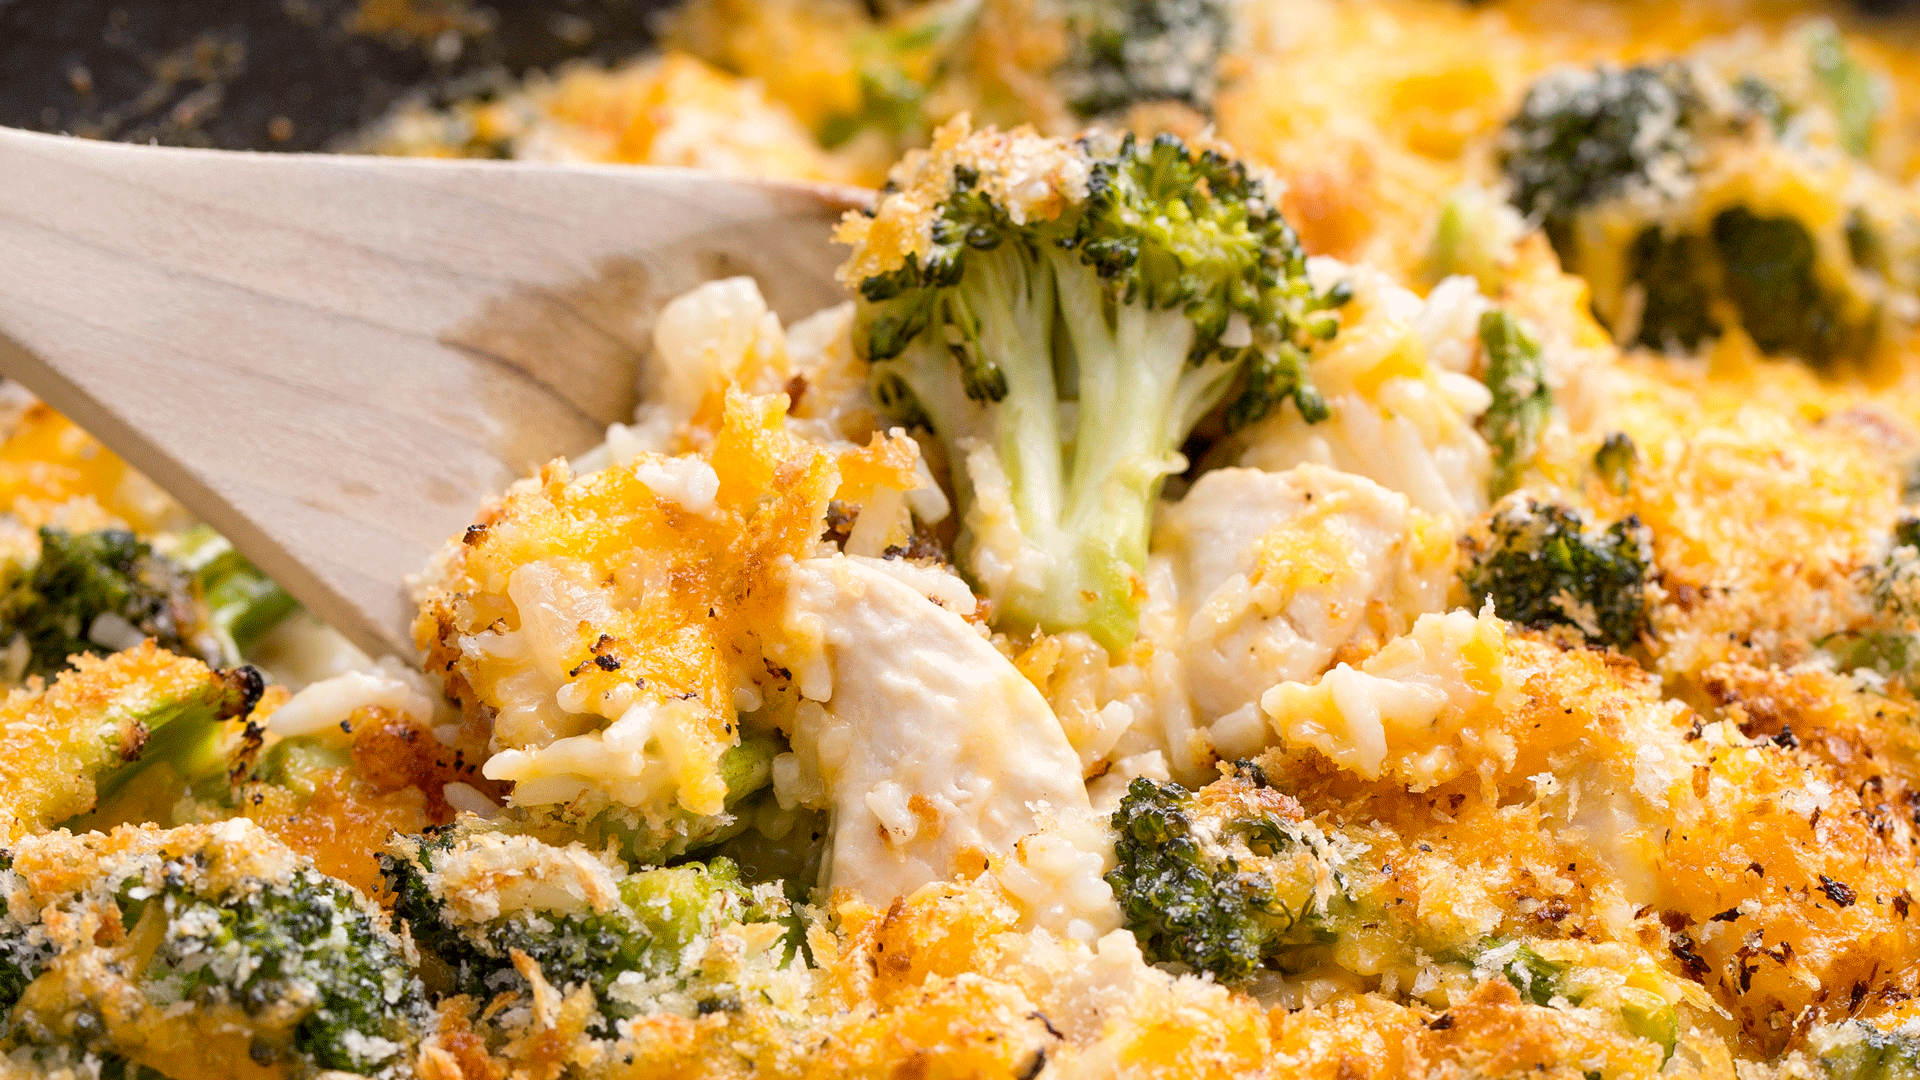 Easy Cheesy Chicken and Broccoli Casserole Recipe - Delish.com